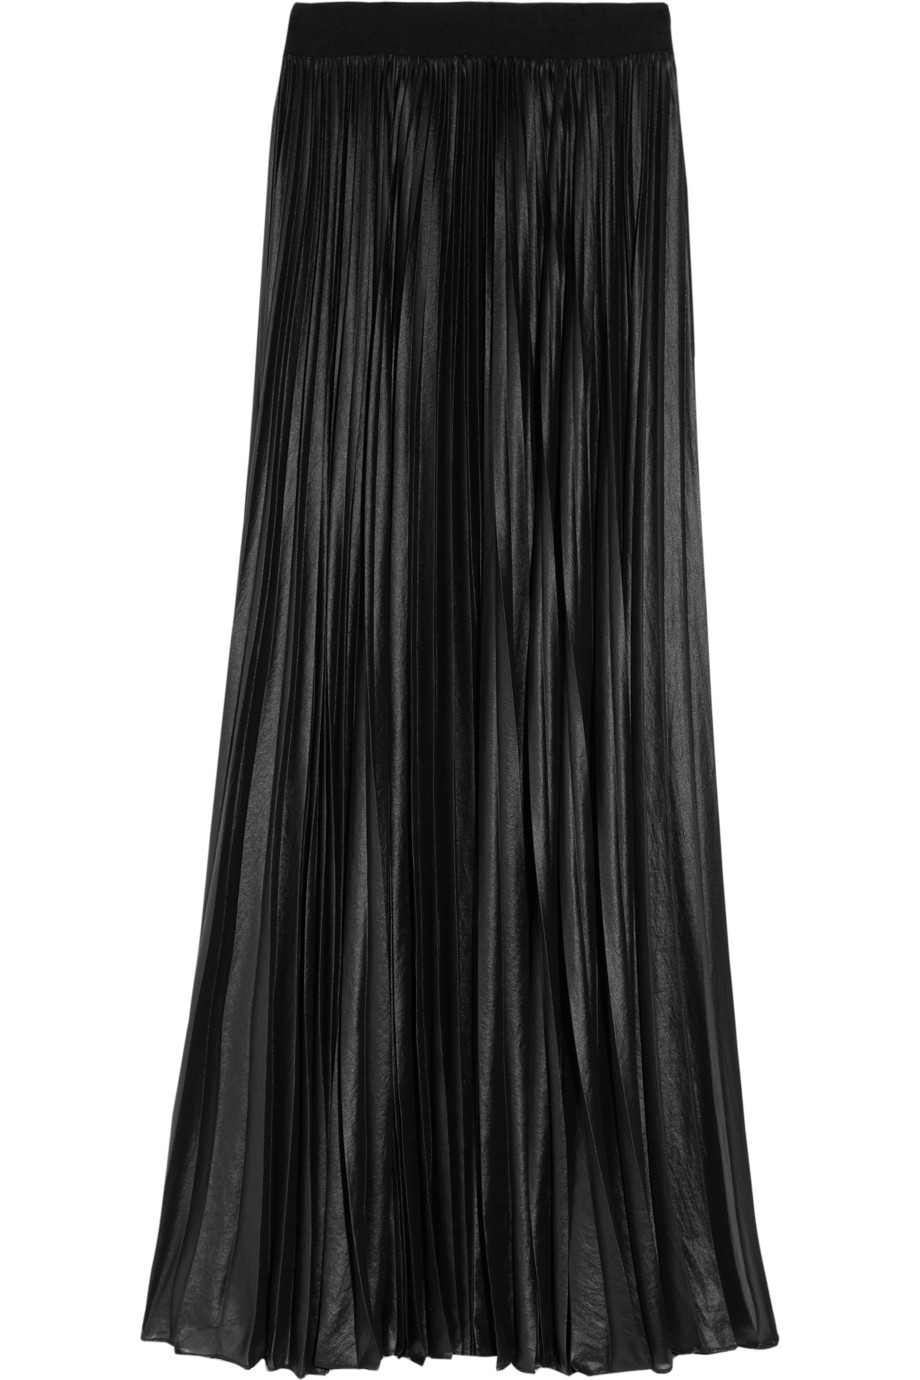 Bcbgmaxazria Pleated Chiffon Maxi Skirt in Black | Lyst